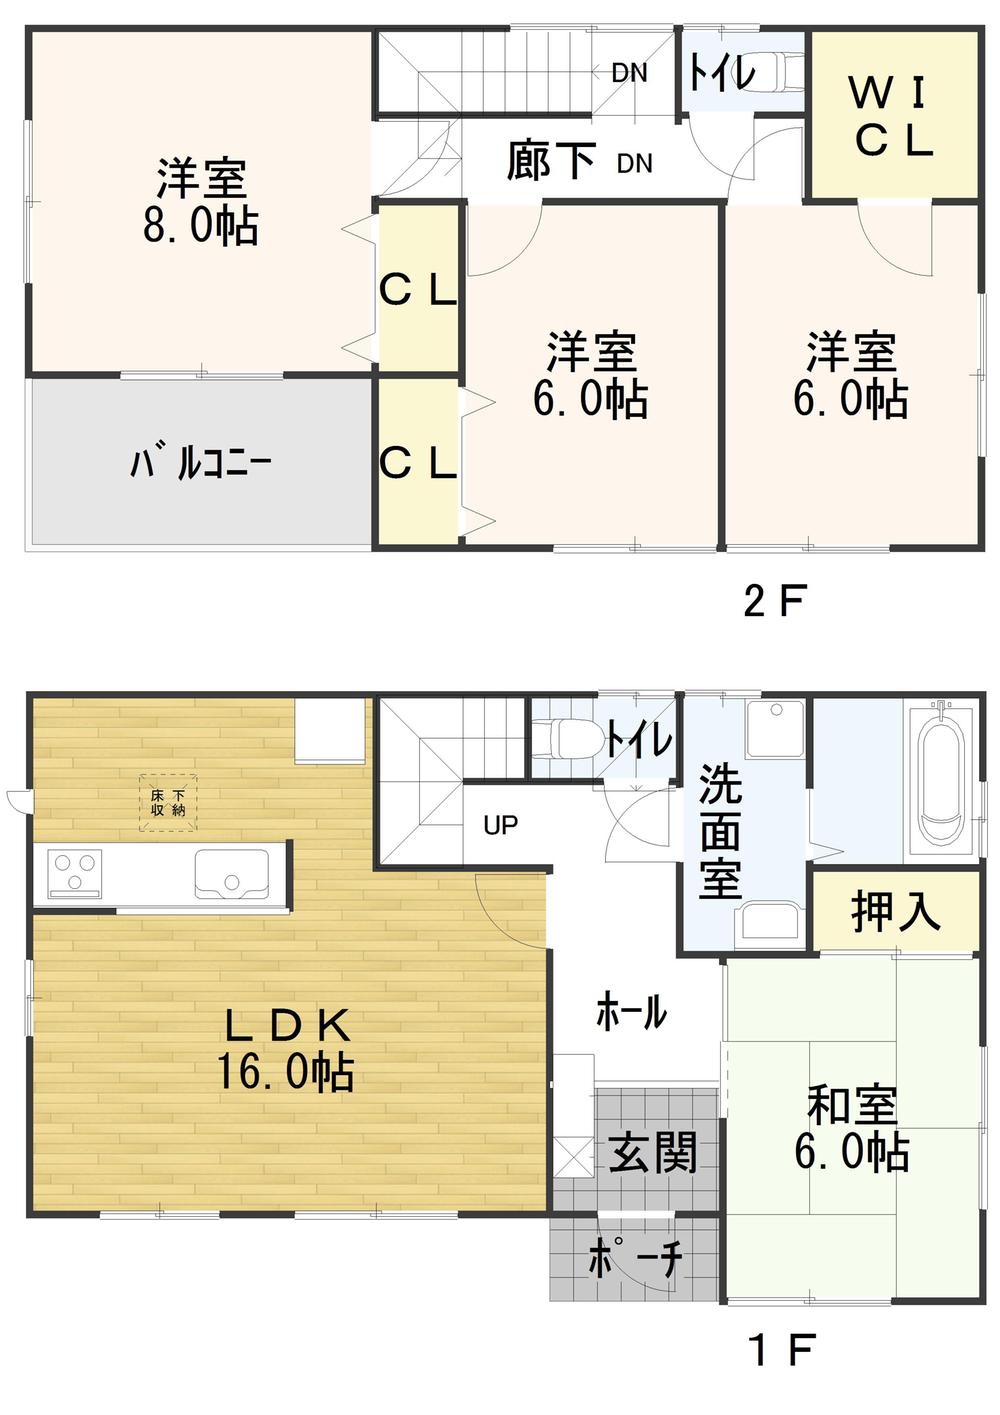 Floor plan. 18.9 million yen, 4LDK, Land area 195.66 sq m , Building area 105.17 sq m